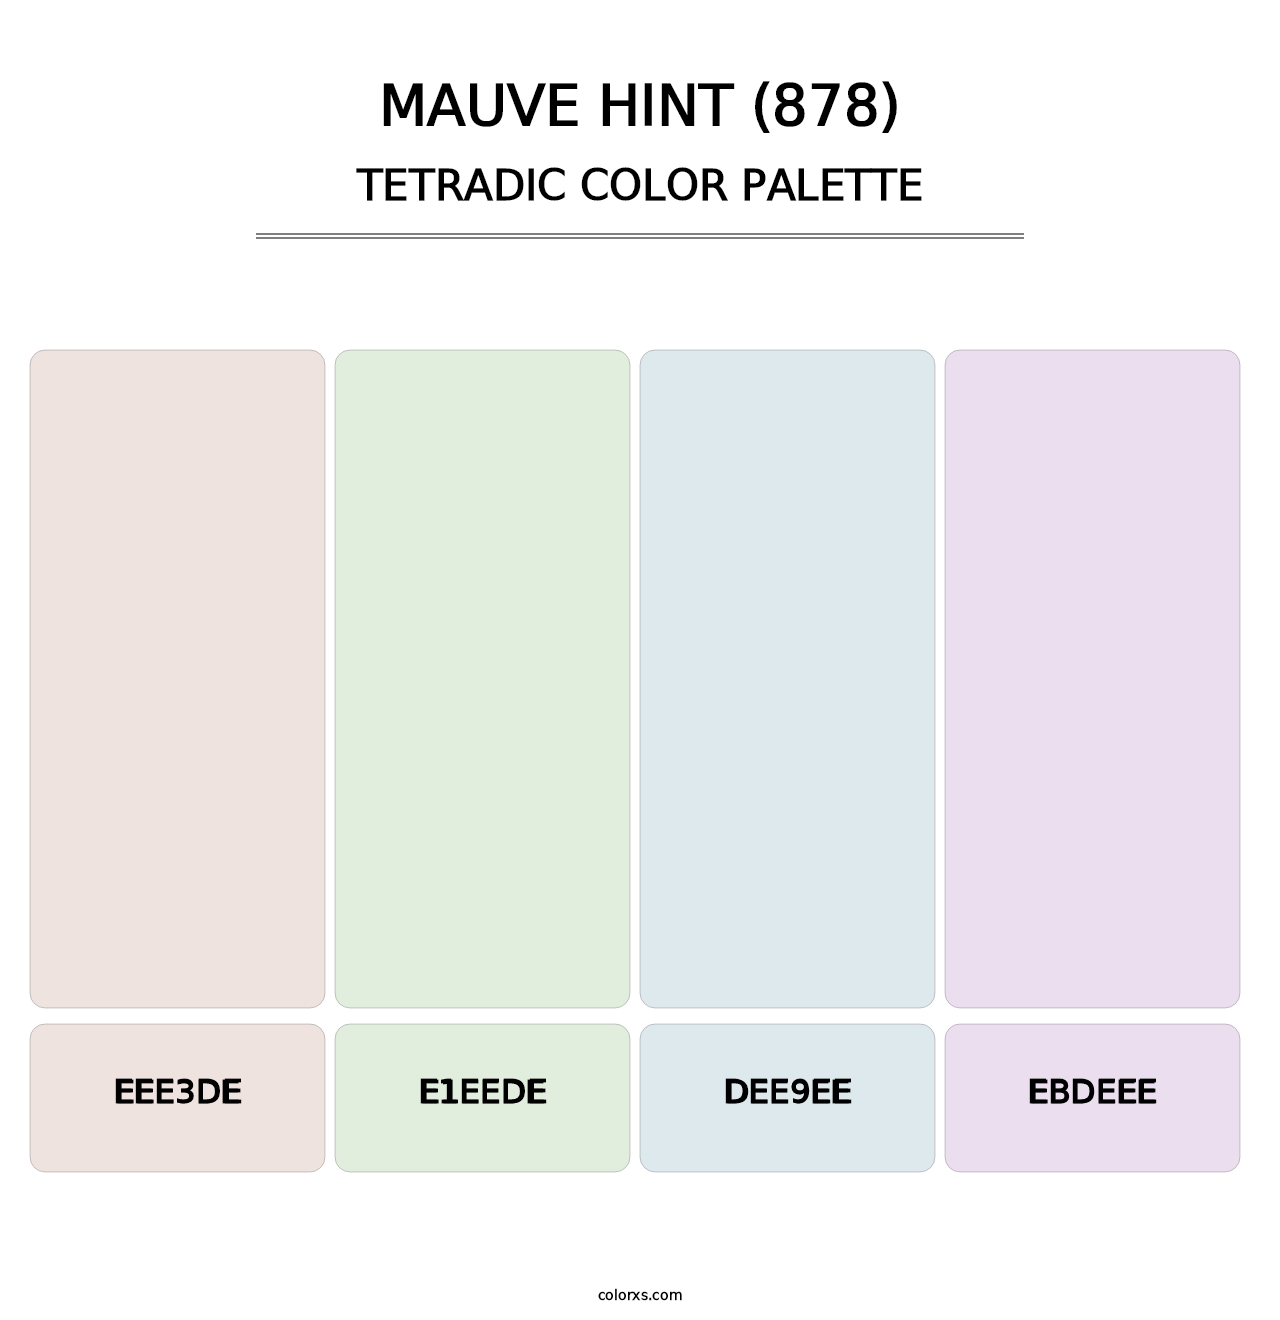 Mauve Hint (878) - Tetradic Color Palette